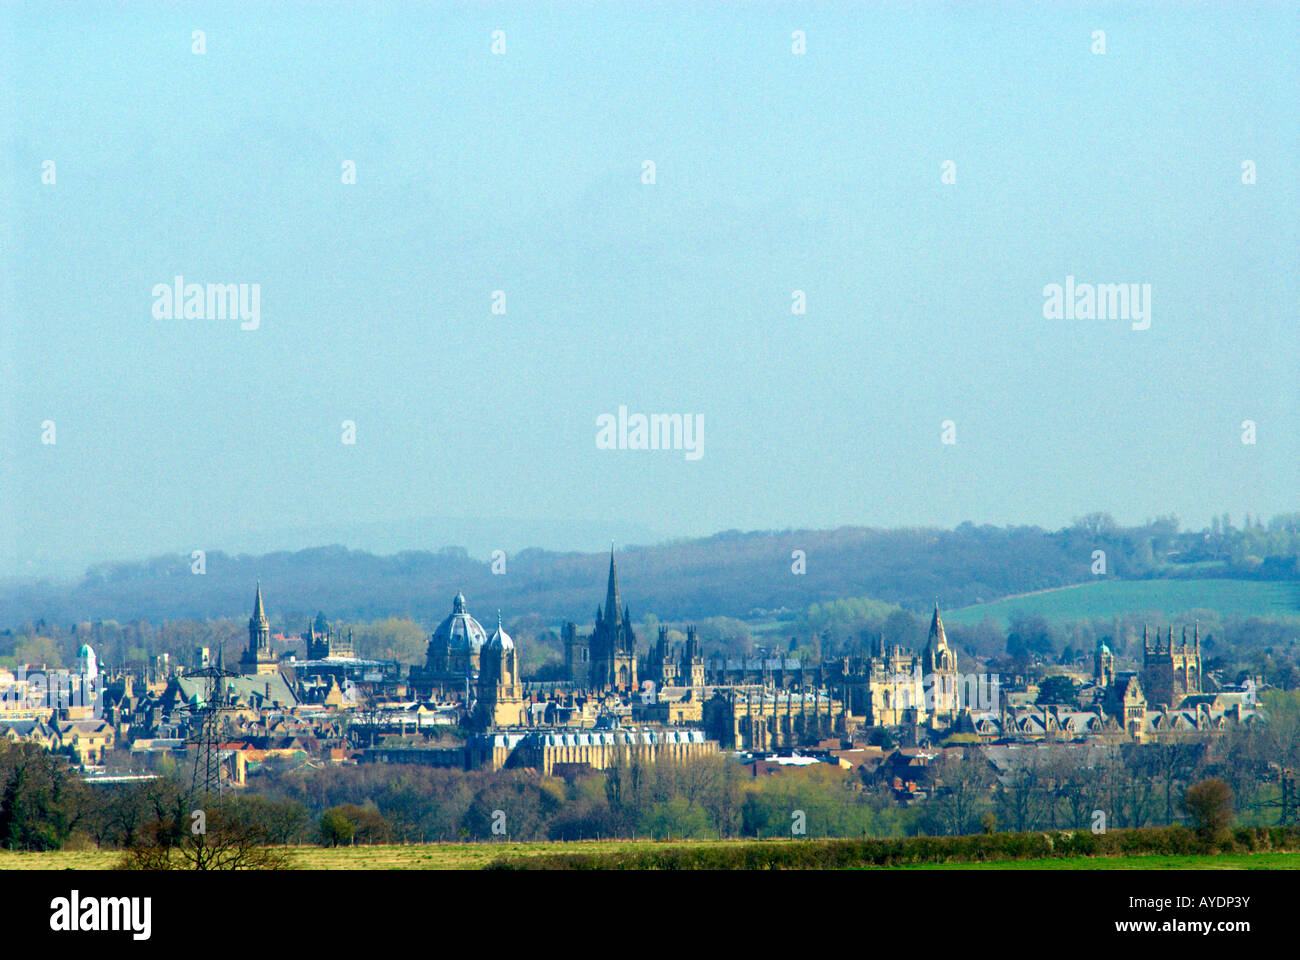 Une vue lointaine de la Dreaming Spires d'Oxford, Angleterre Banque D'Images